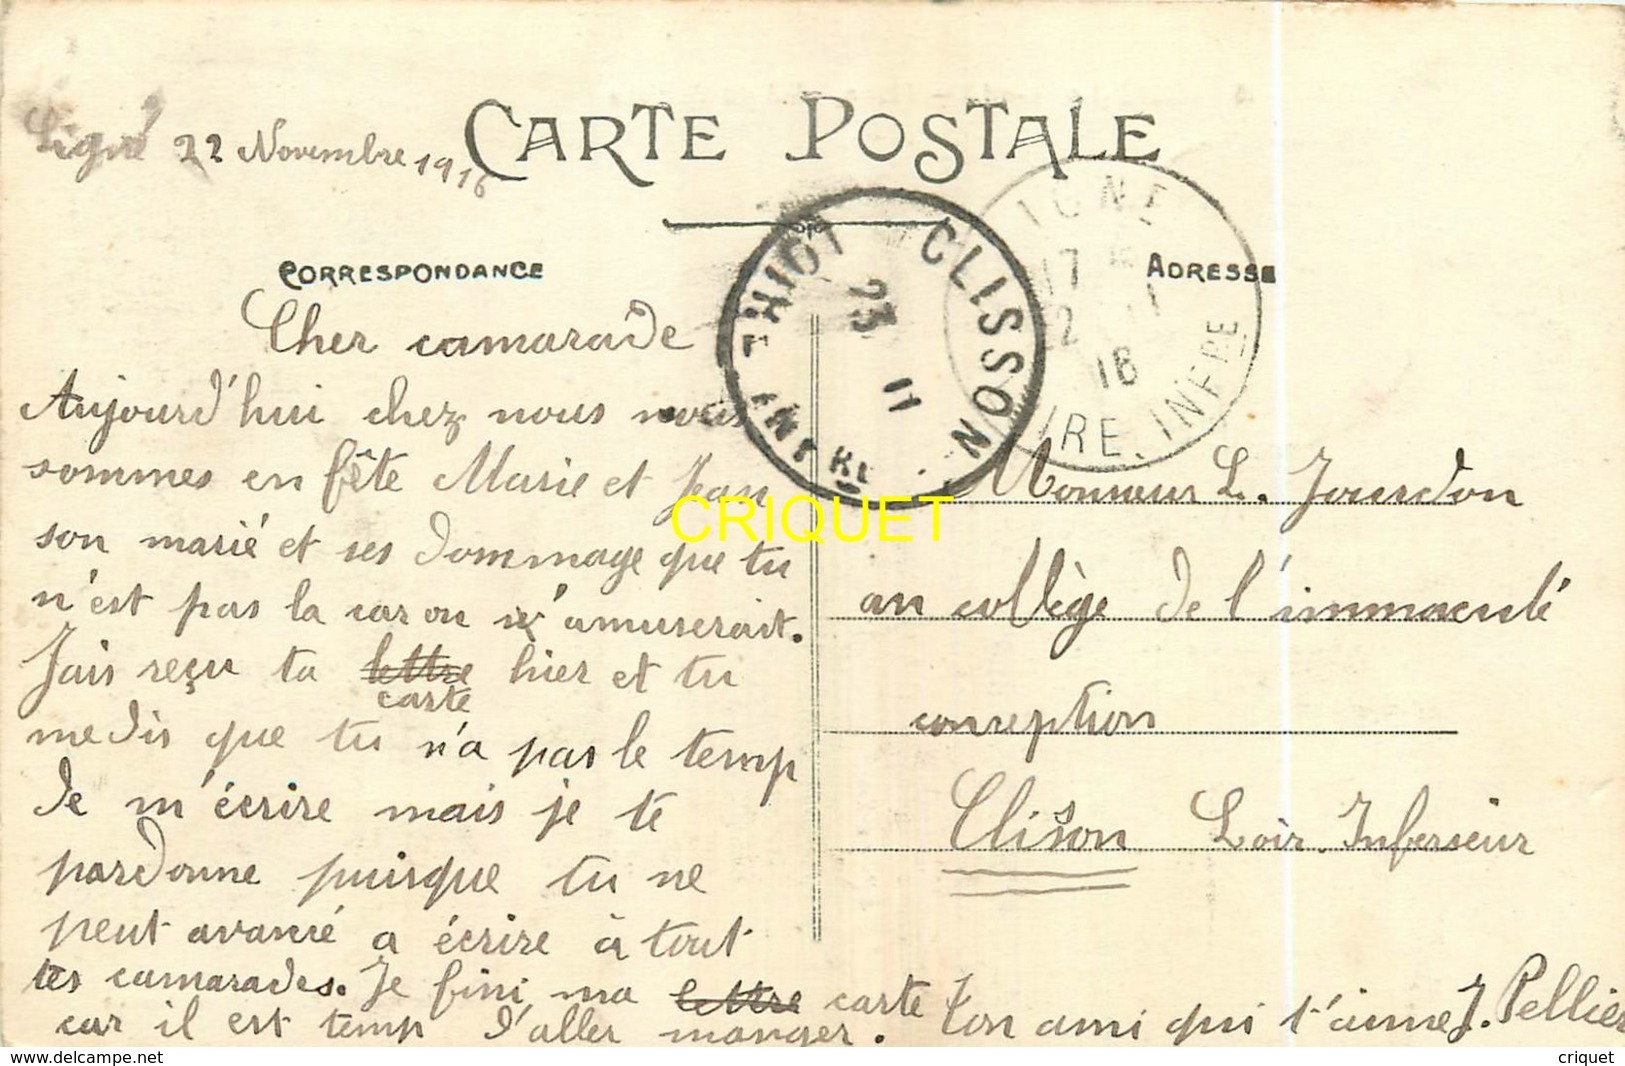 44 Ligné, Place Côté De L'Eglise, Carte Pas Courante Affranchie 1916 - Ligné